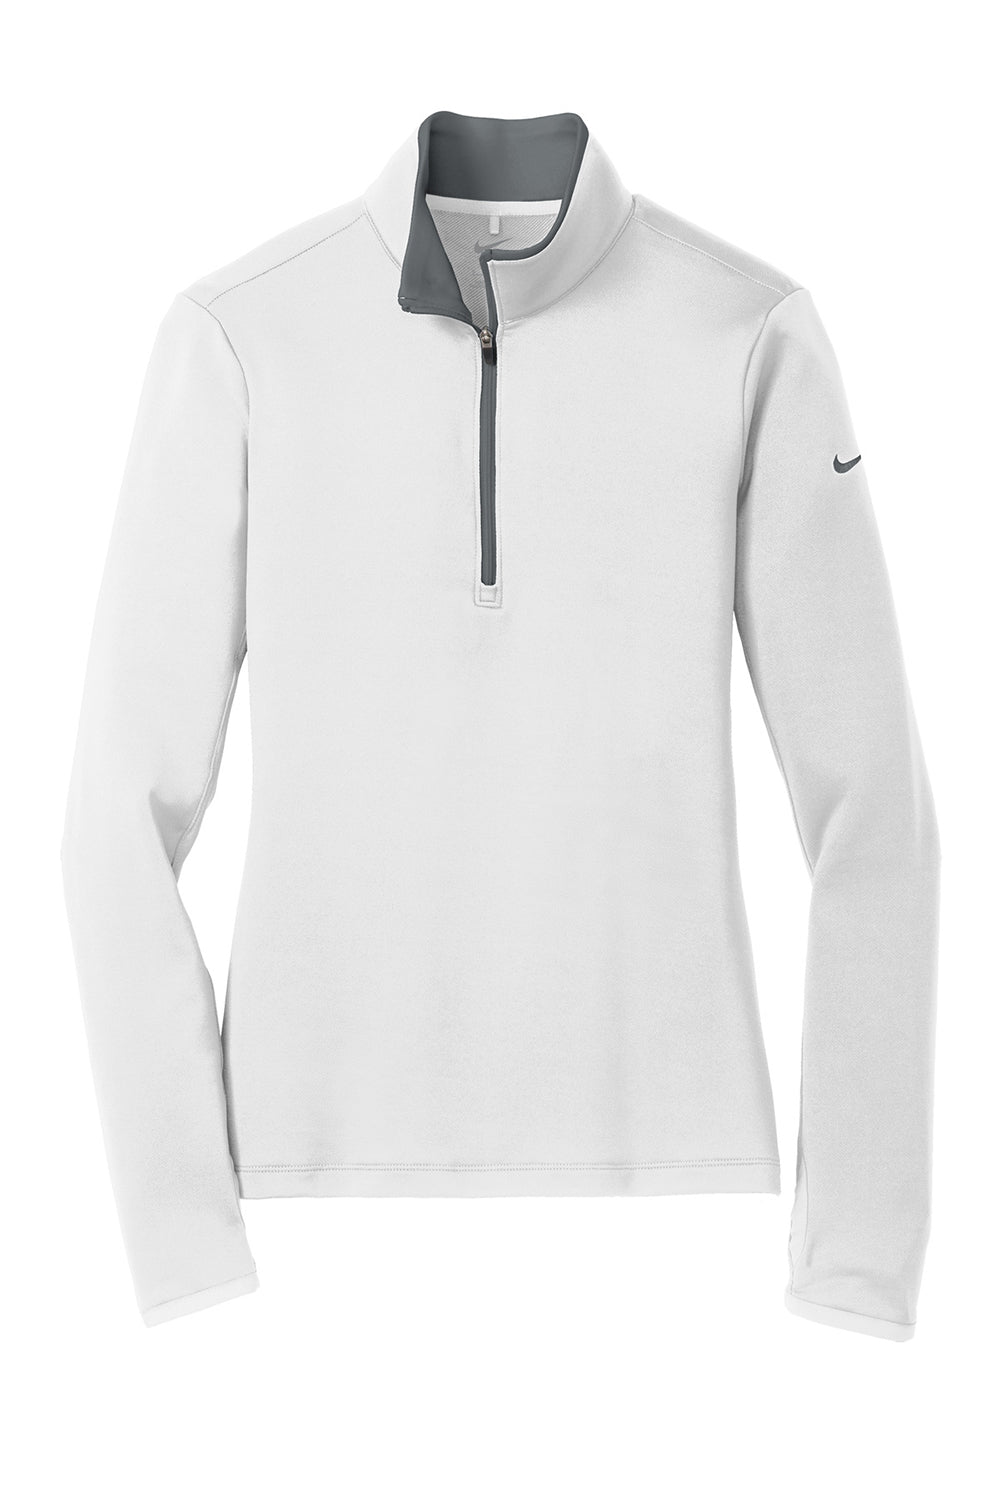 Nike 779796 Womens Dri-Fit Moisture Wicking 1/4 Zip Sweatshirt White/Dark Grey Flat Front